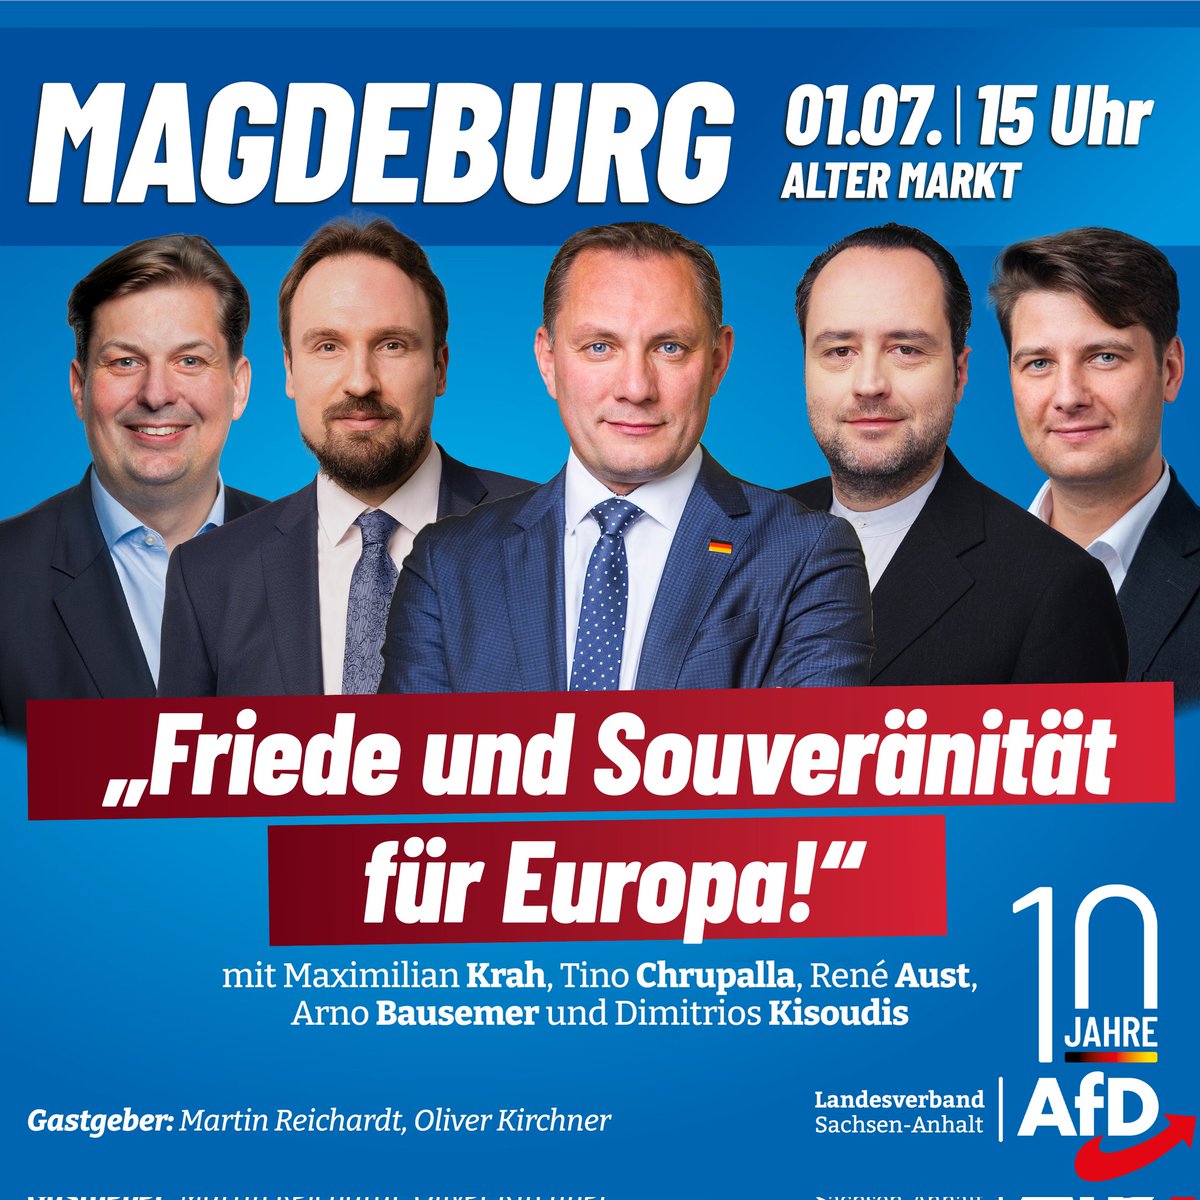 Die #Europawahl 2024 wirft ihre Schatten voraus. Aus diesem Anlass wird die #AfD am 1.7. auf dem #AltenMarkt in #Magdeburg prominente Redner begrüßen. Hauptthemen des #EU-Wahlkampfes werden #Frieden und #Souveränität sein.